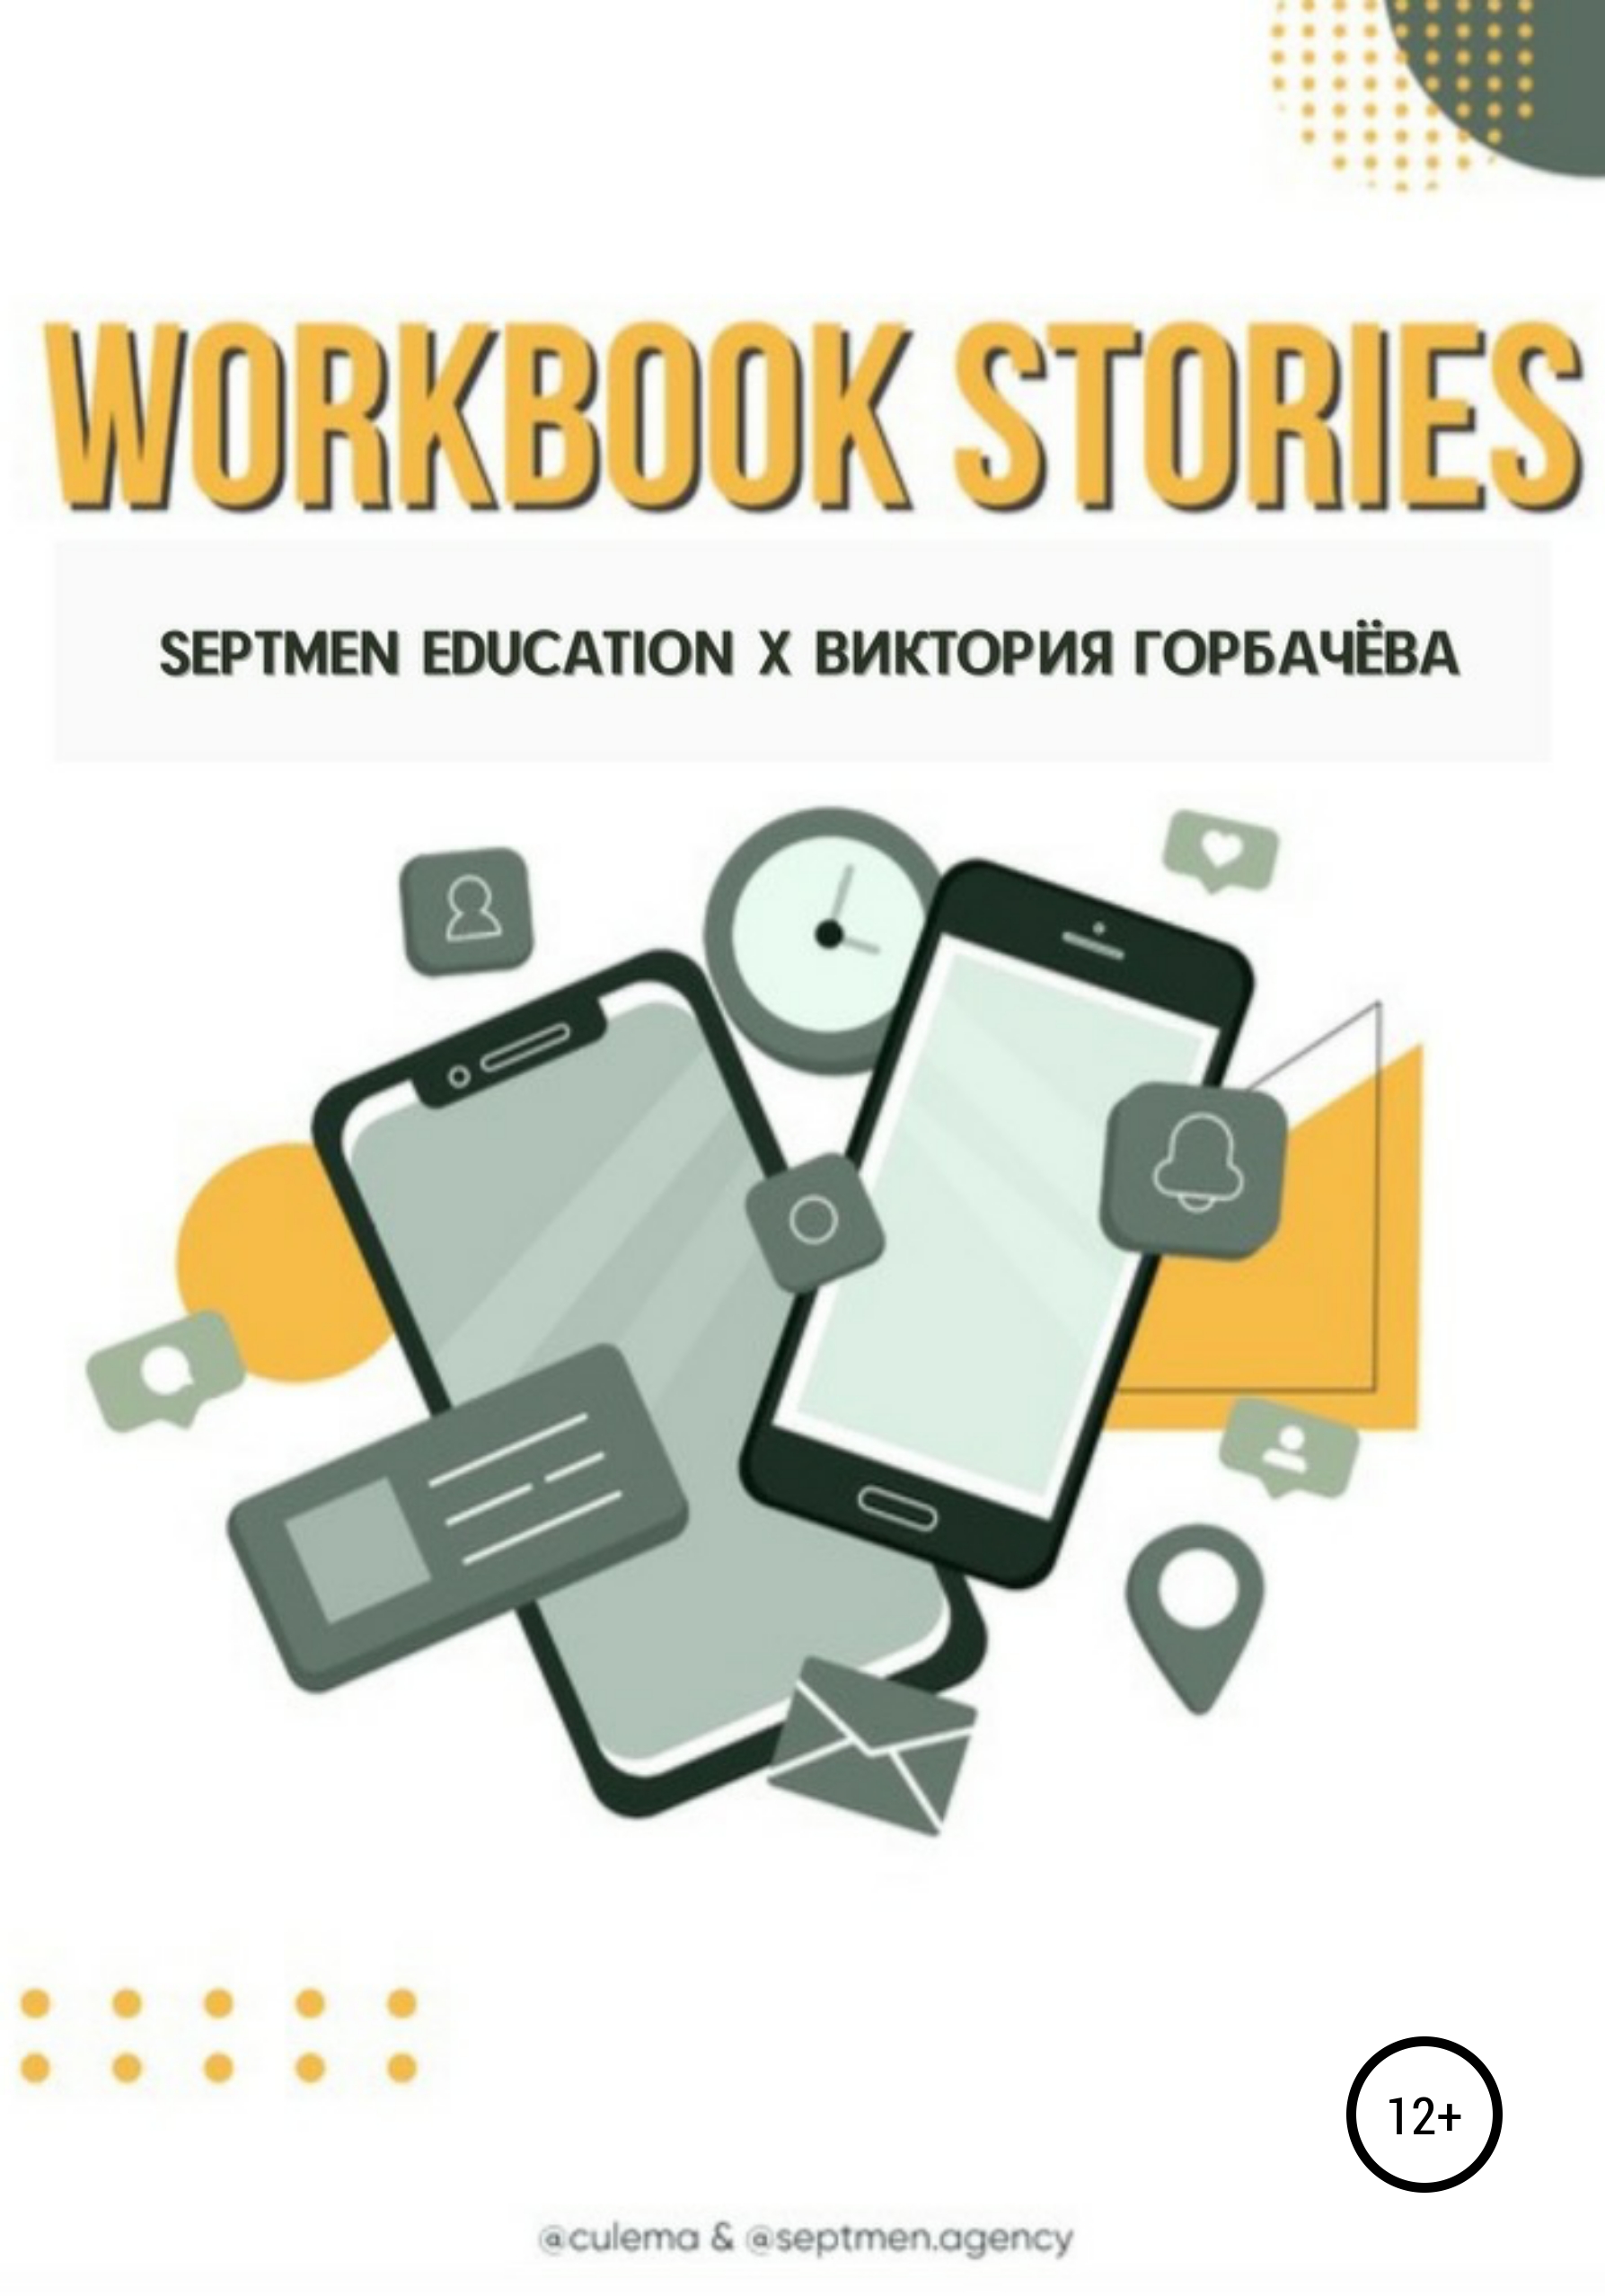 Книга  Workbook stories созданная Septmen Education, Виктория Горбачева может относится к жанру дизайн, интернет-маркетинг, реклама. Стоимость электронной книги Workbook stories с идентификатором 63747077 составляет 990.00 руб.